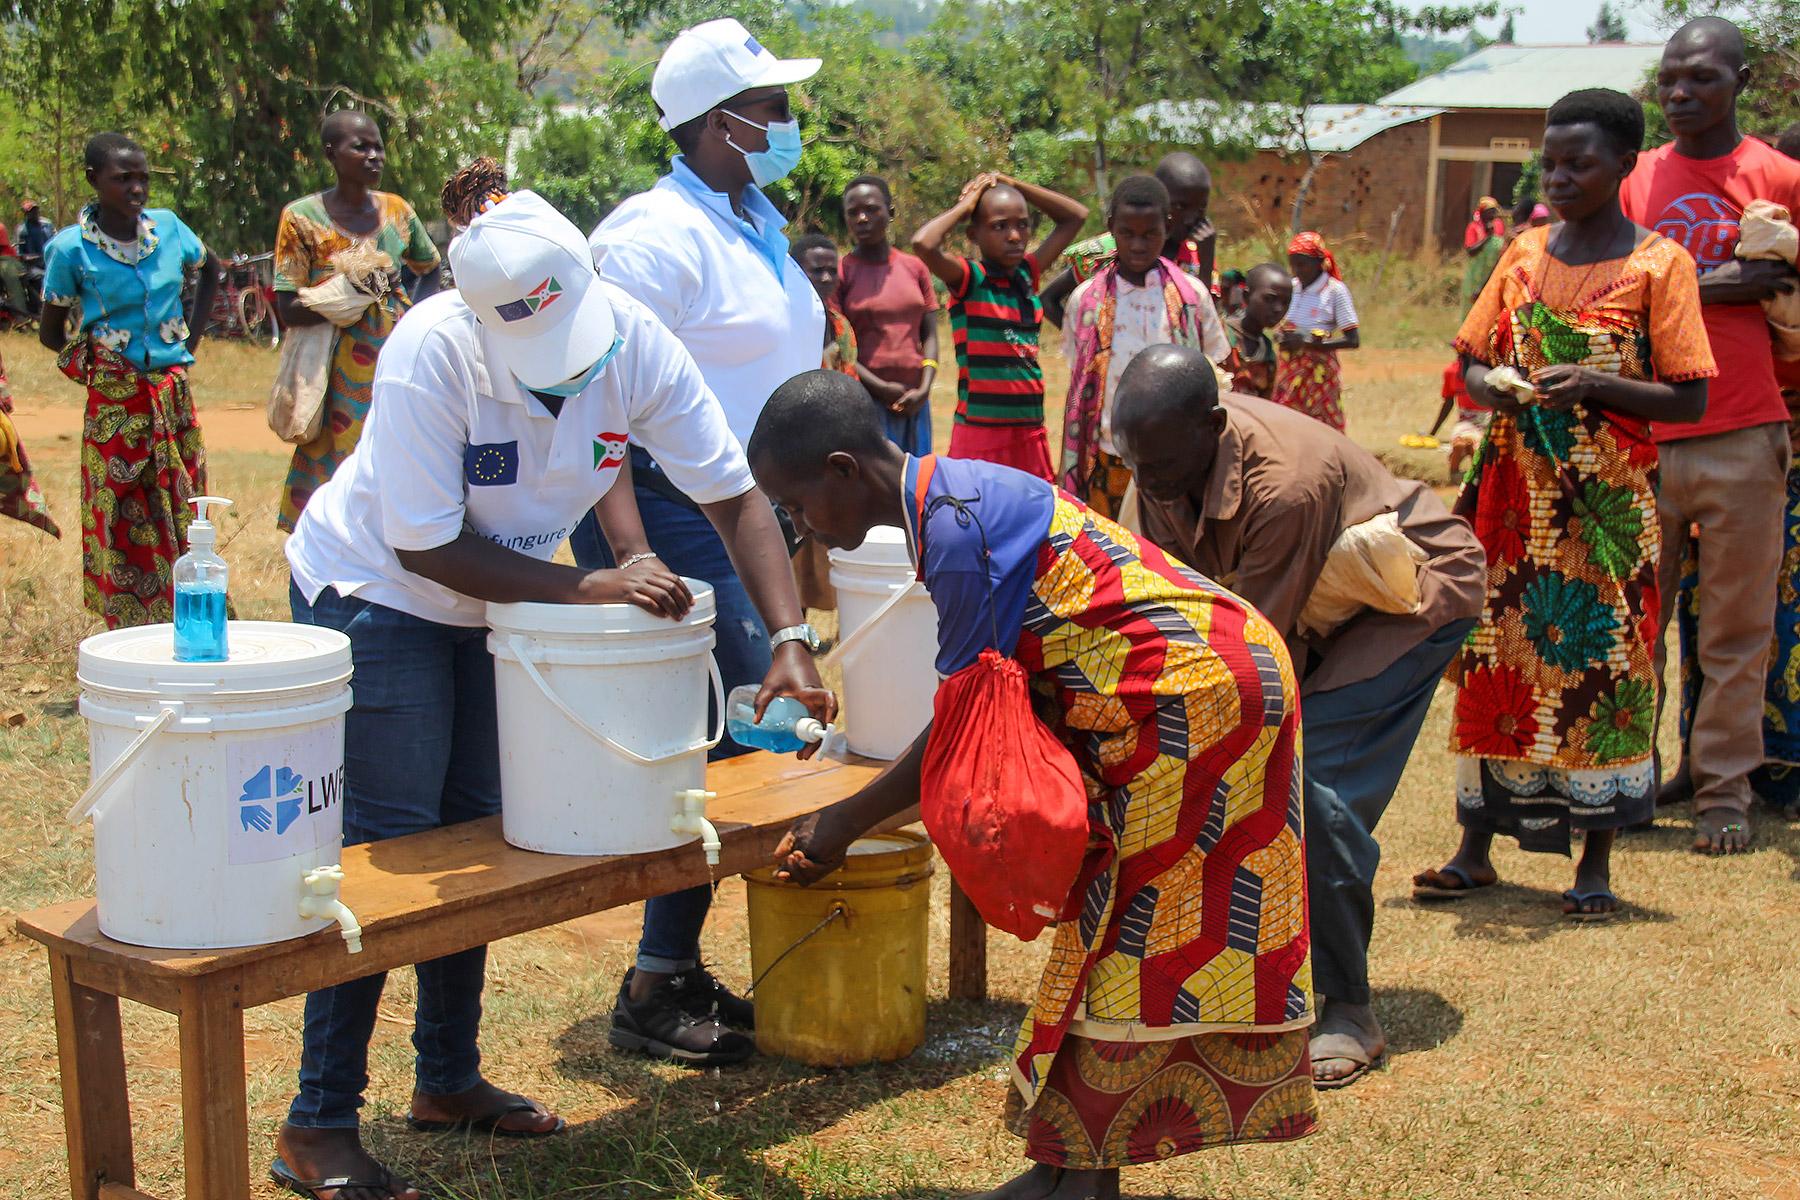 Händewaschen vor einer Verteilung in Burundi. Wasser ist unverzichtbar für Hygienemaßnahmen, die die Ausbreitung von COVID-19 verhindern. Foto: LWB Burundi